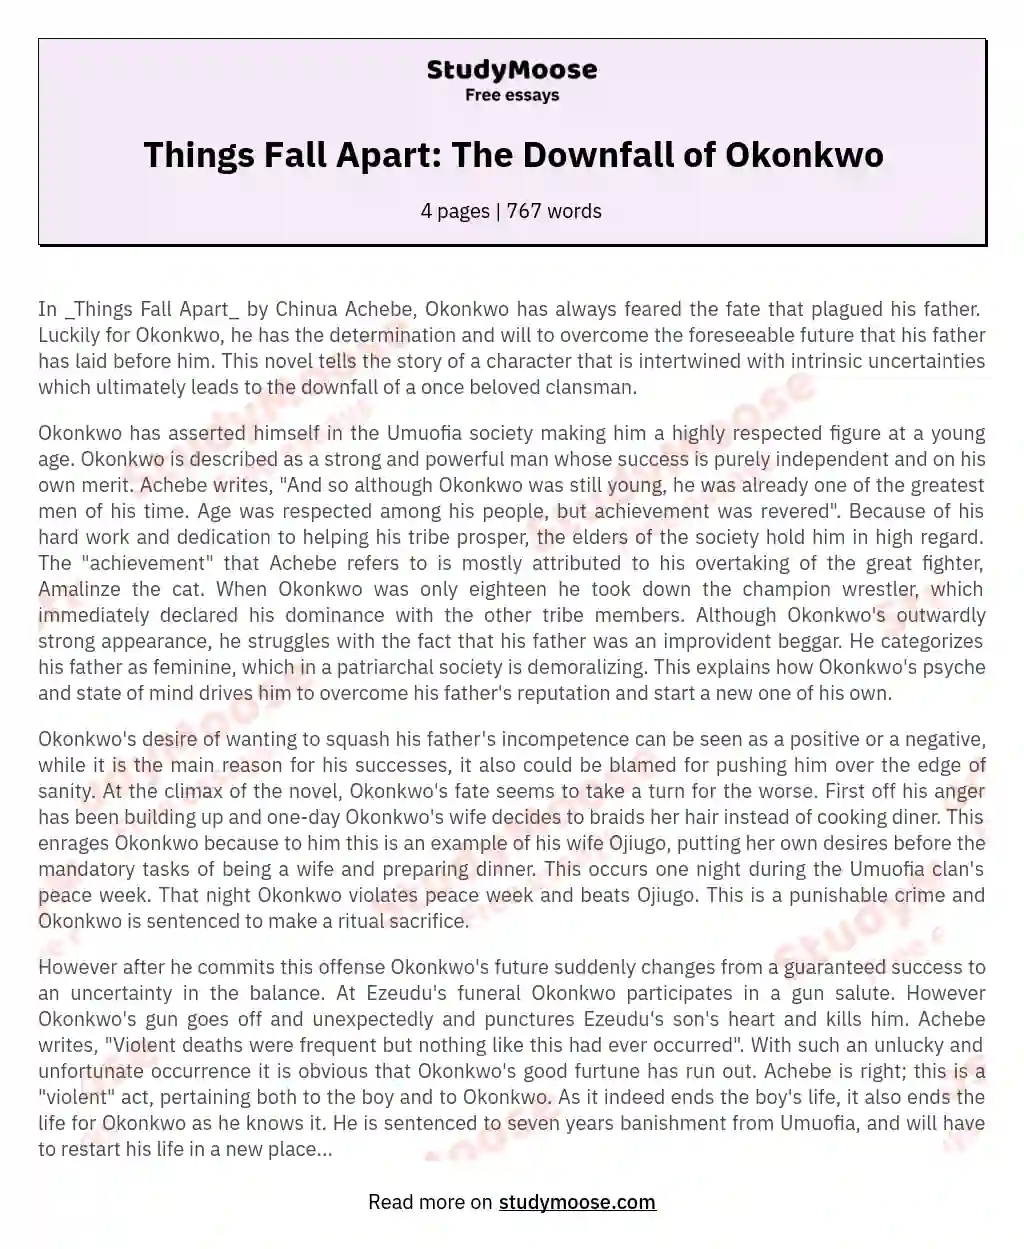 things fall apart okonkwo's downfall essay